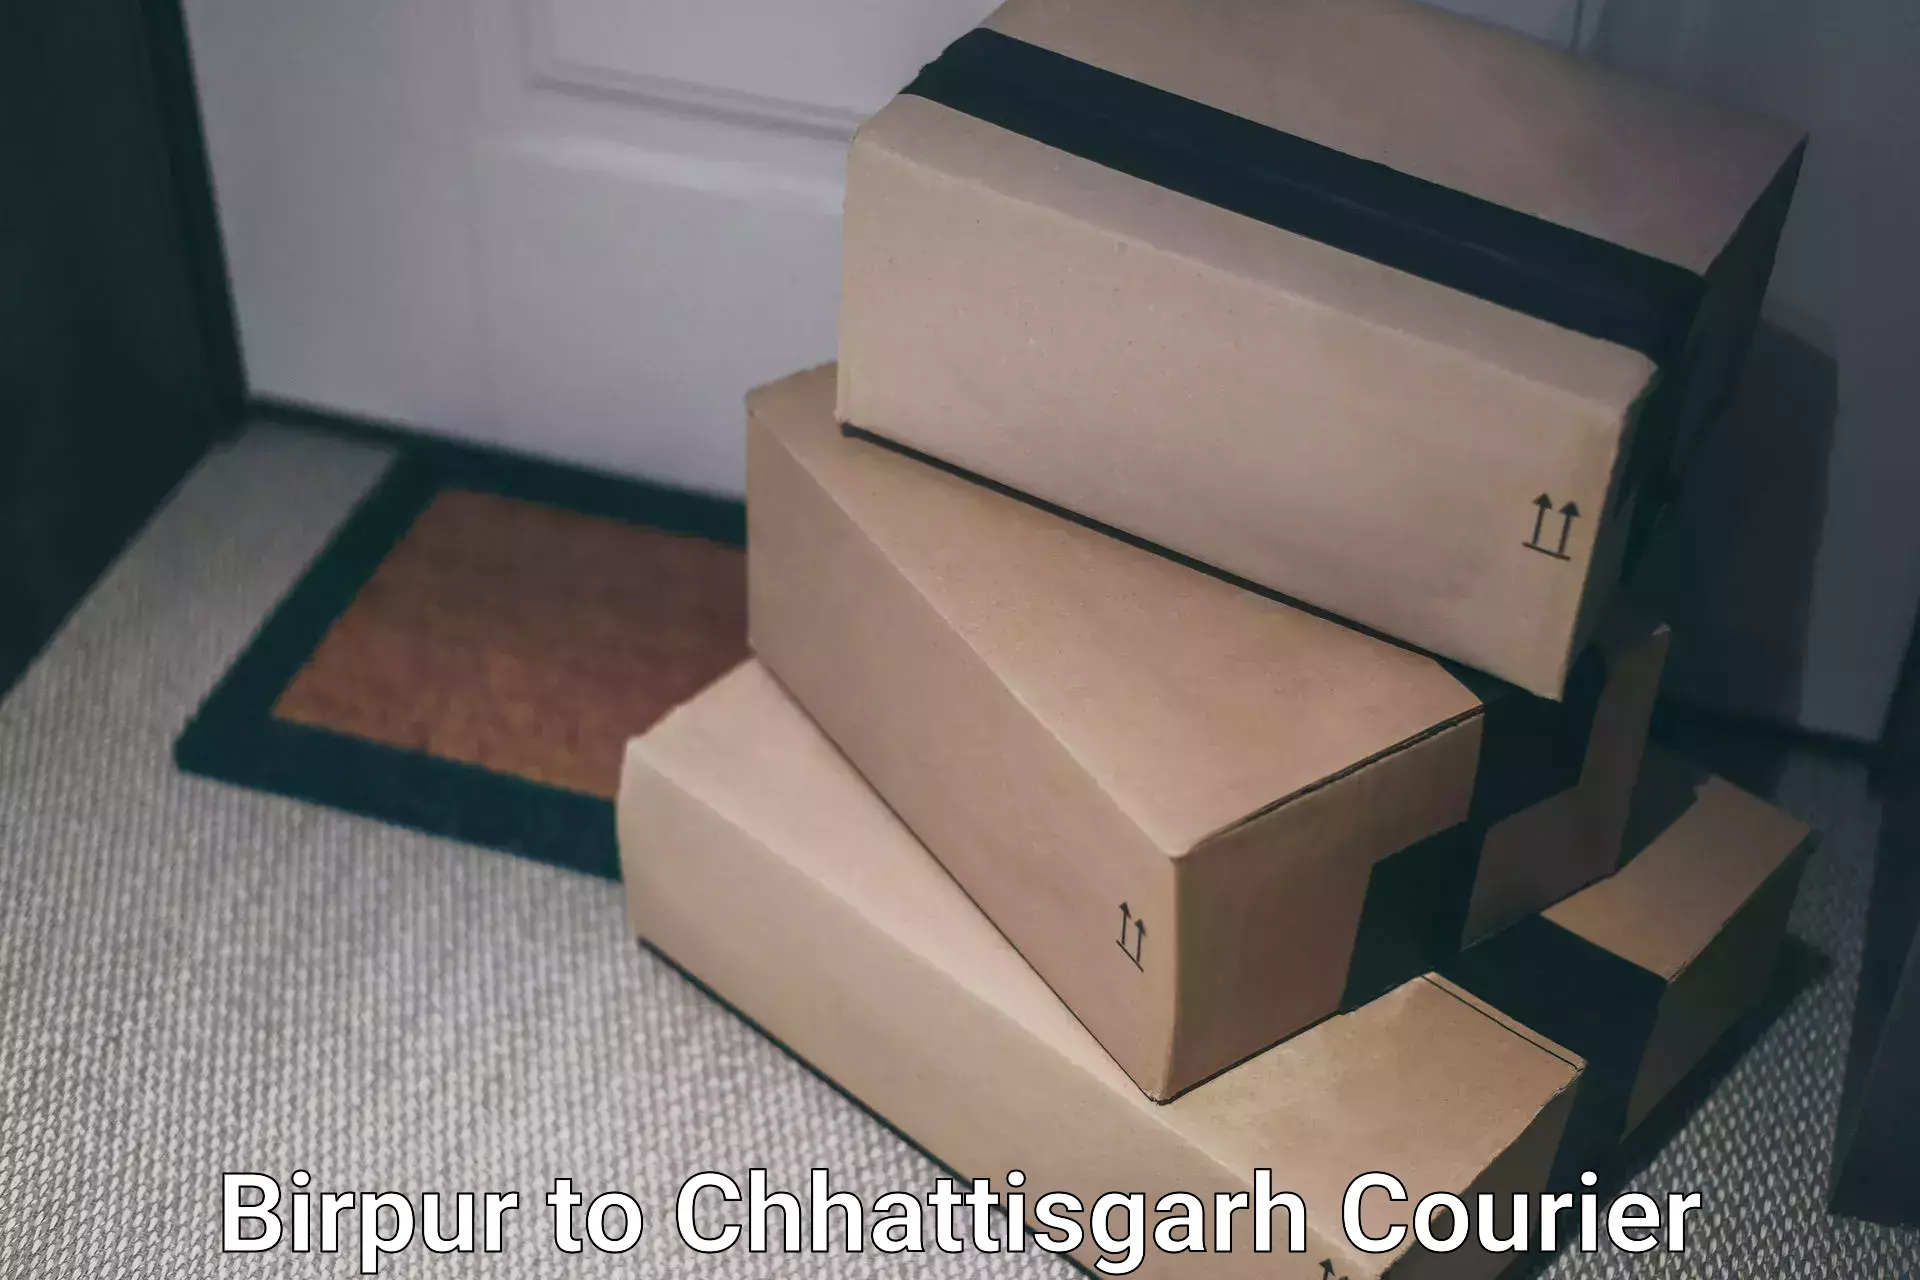 Tracking updates in Birpur to Chhattisgarh